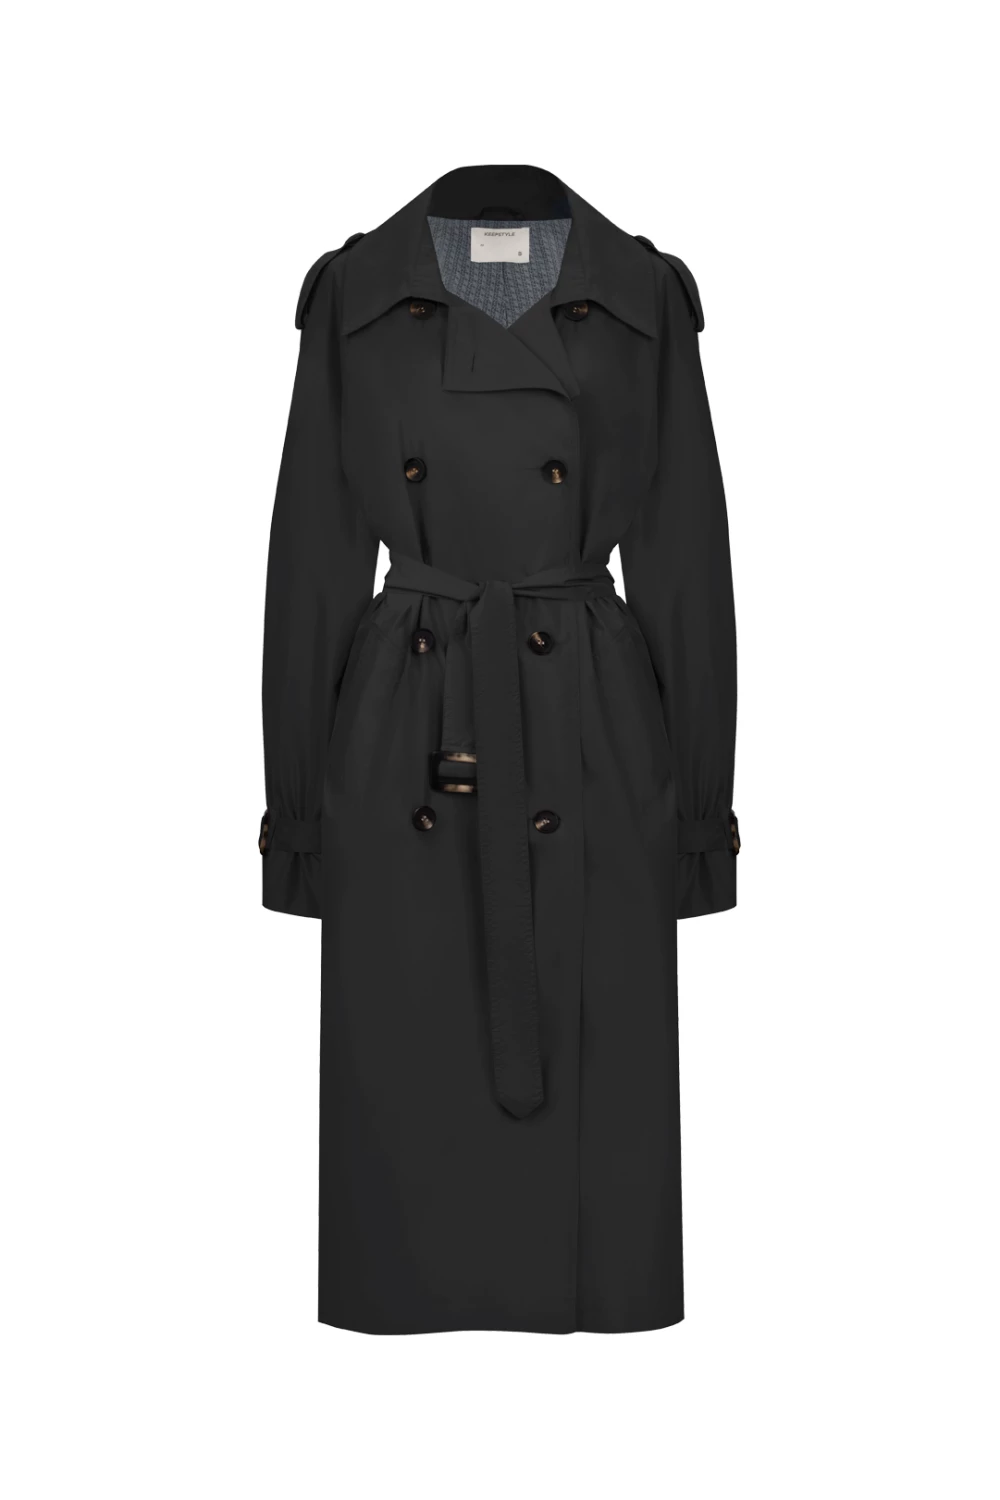 80s trench coat in dark grey color